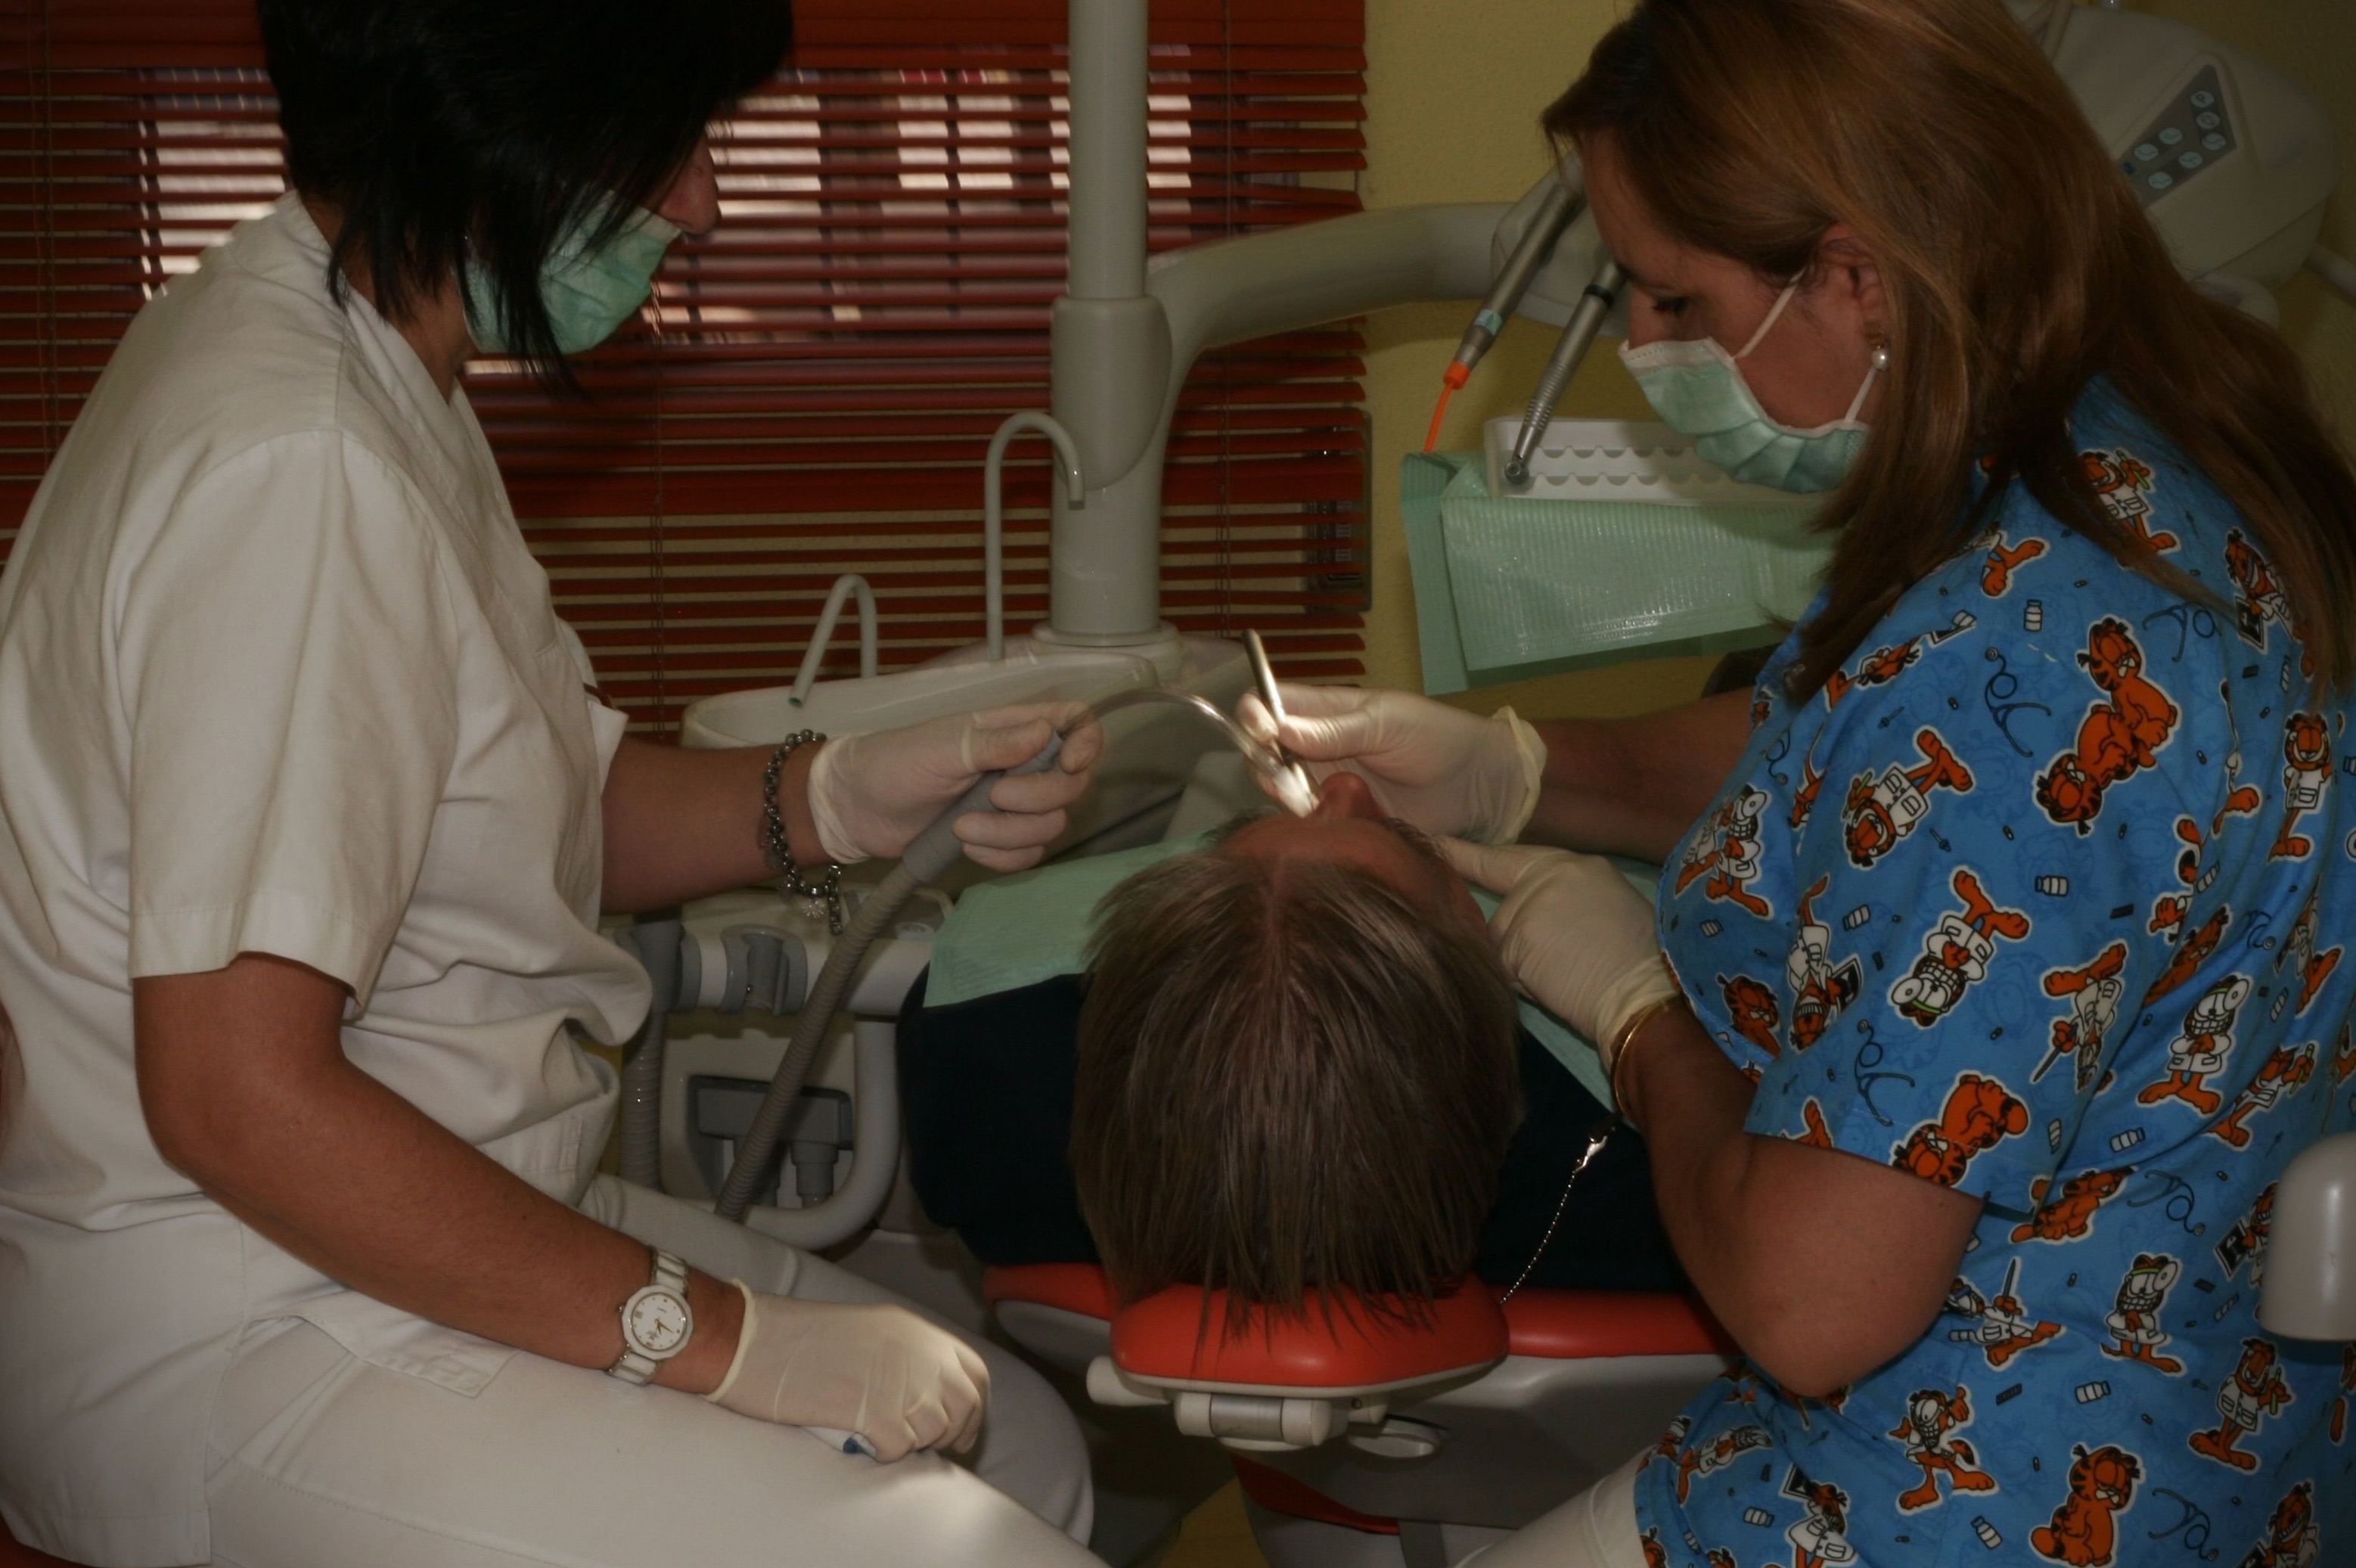 Especialista en estética dental, blanqueamiento, implantes dentales, odontología integral